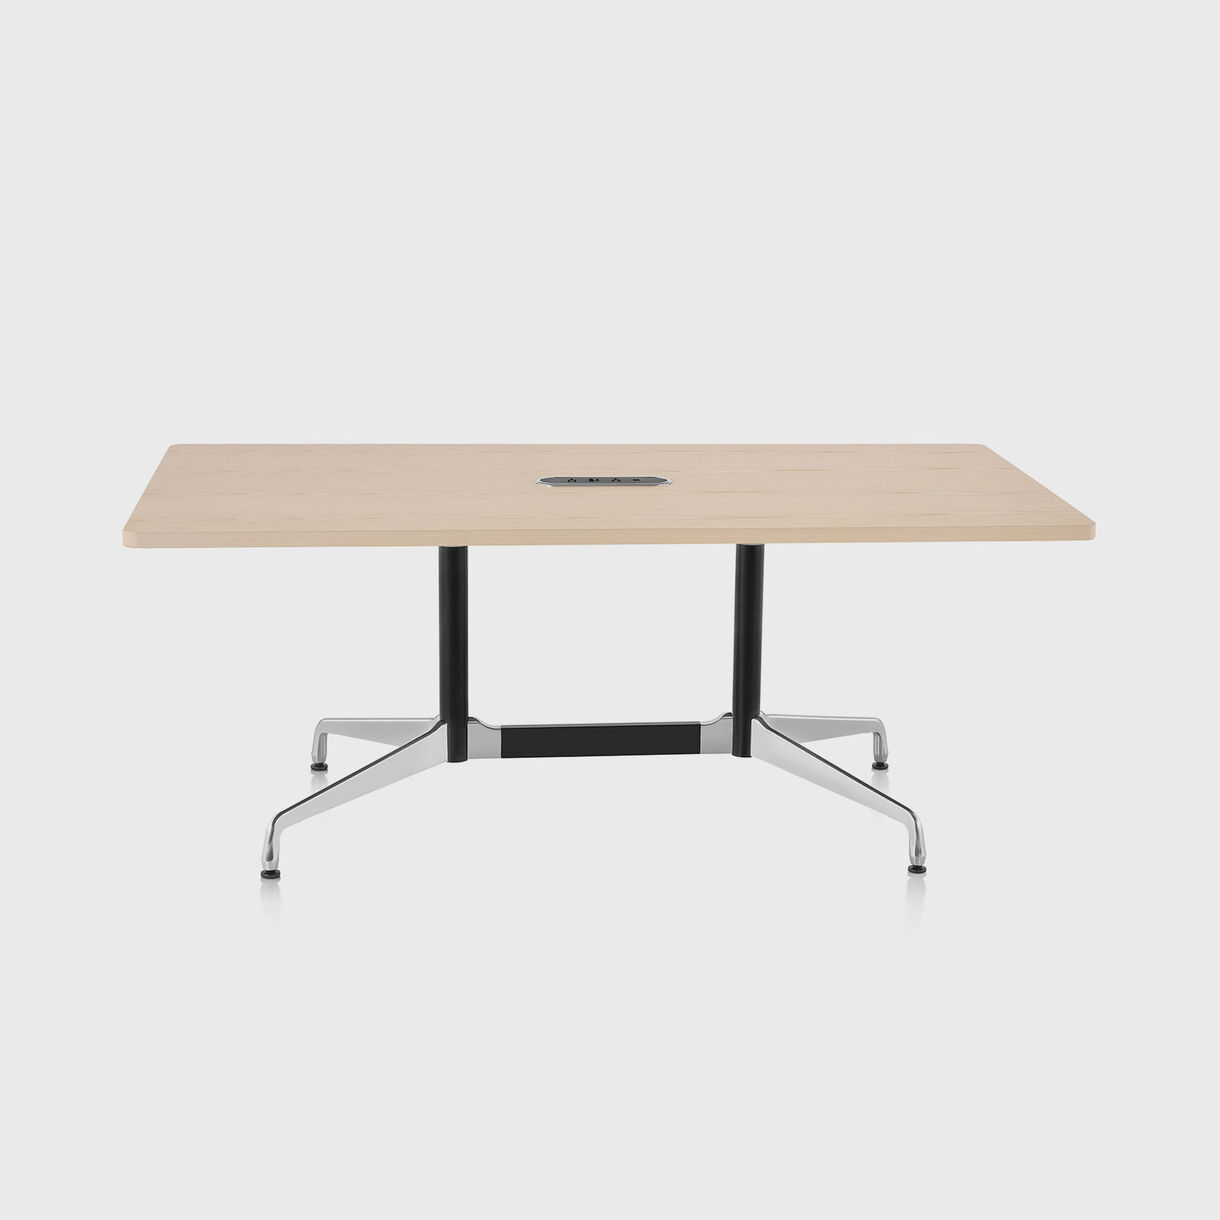 Eames Table, Segmented Base